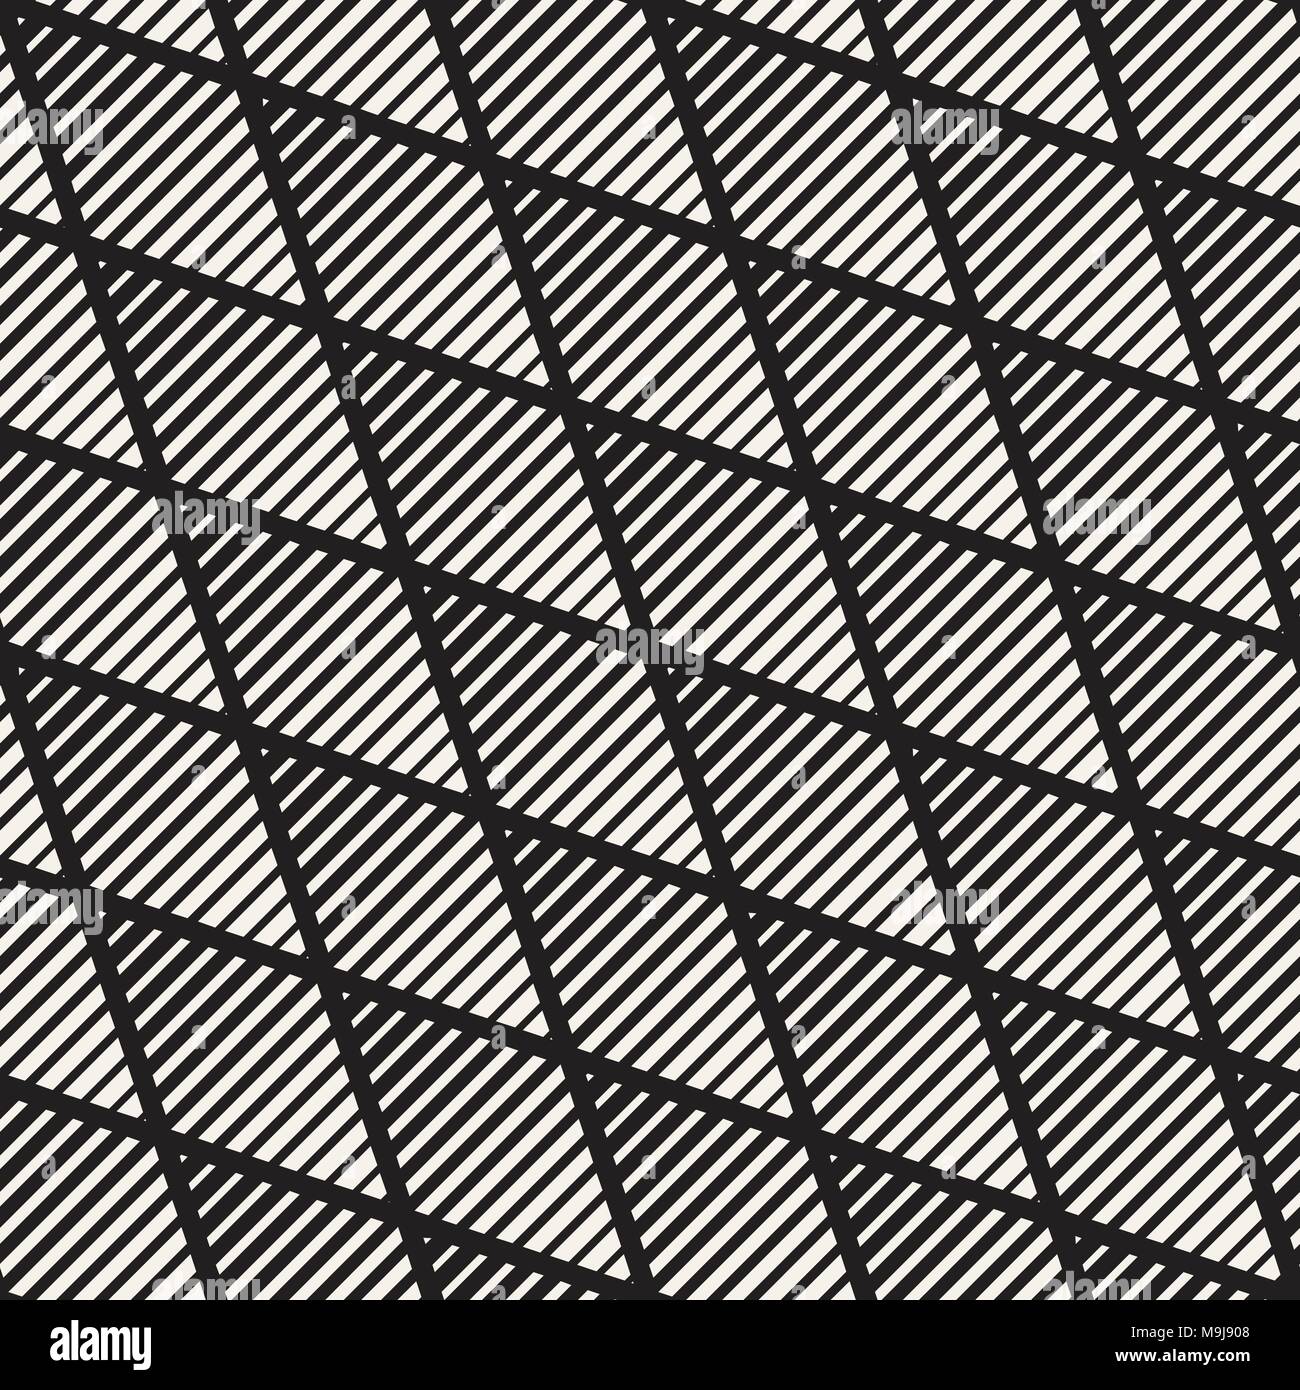 Vector de semitono en blanco y negro perfecta patrón de líneas. Retro geométrica abstracta diseño de fondo. Ilustración del Vector